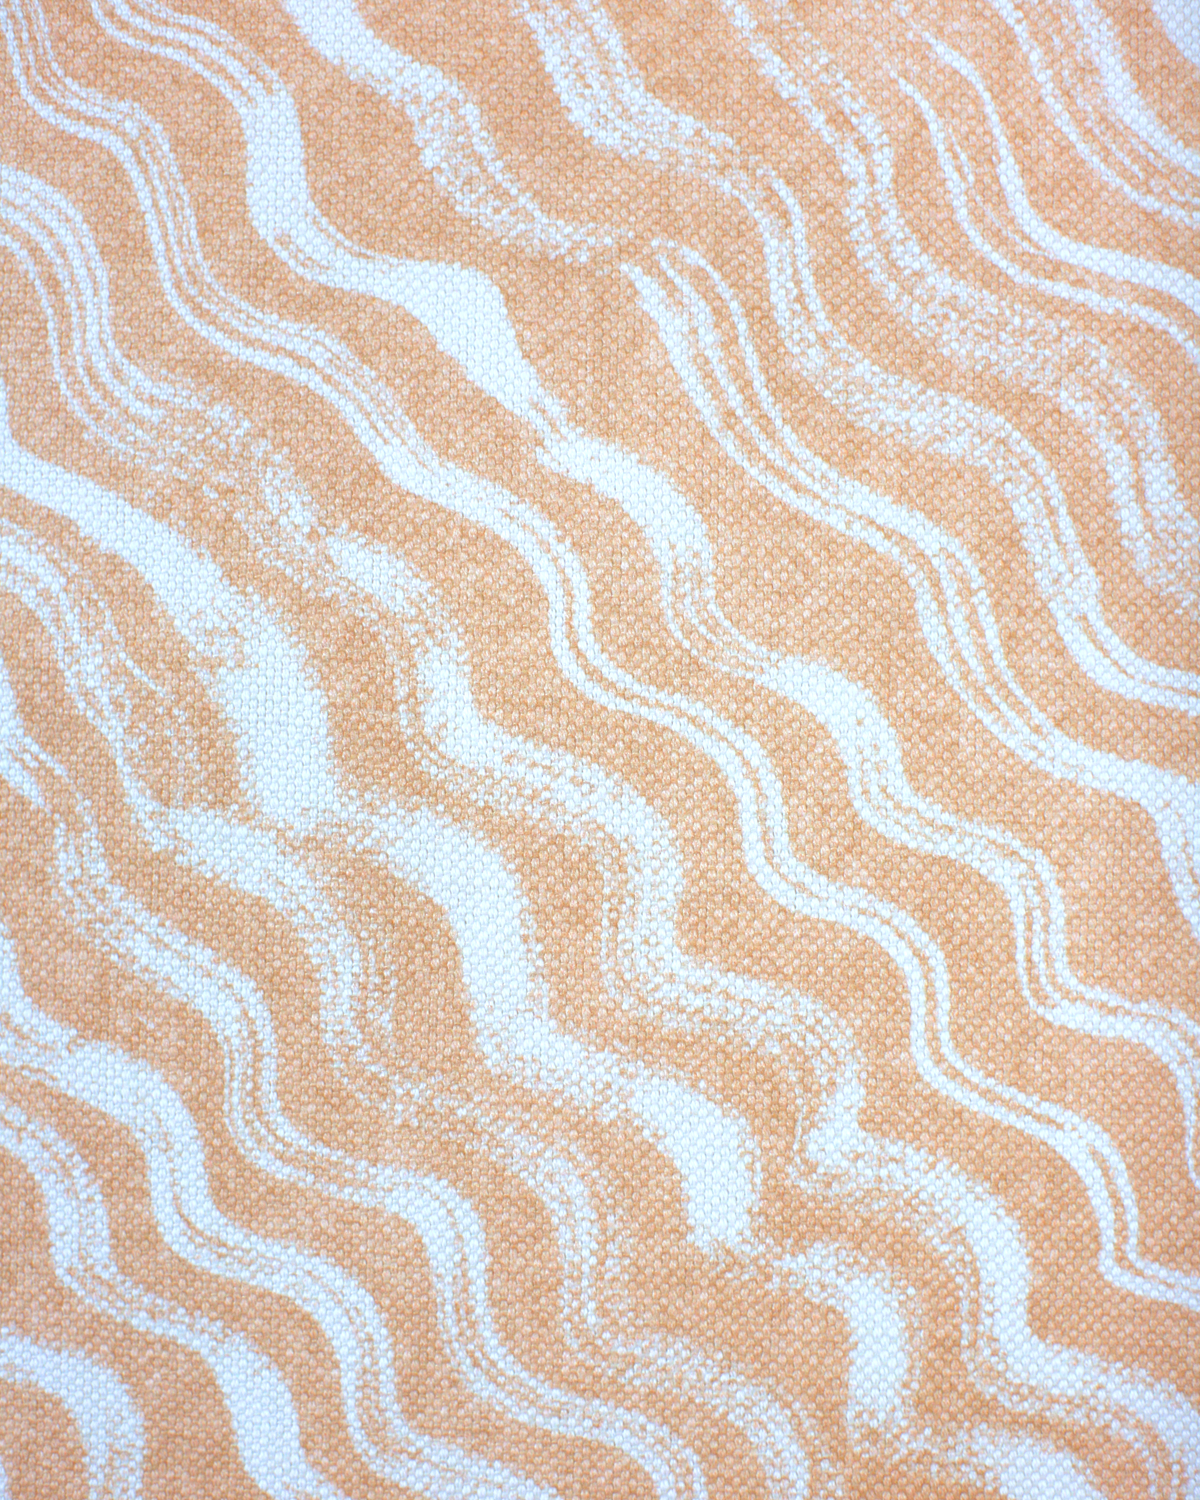 Diagonal Waves Fabric in Peach